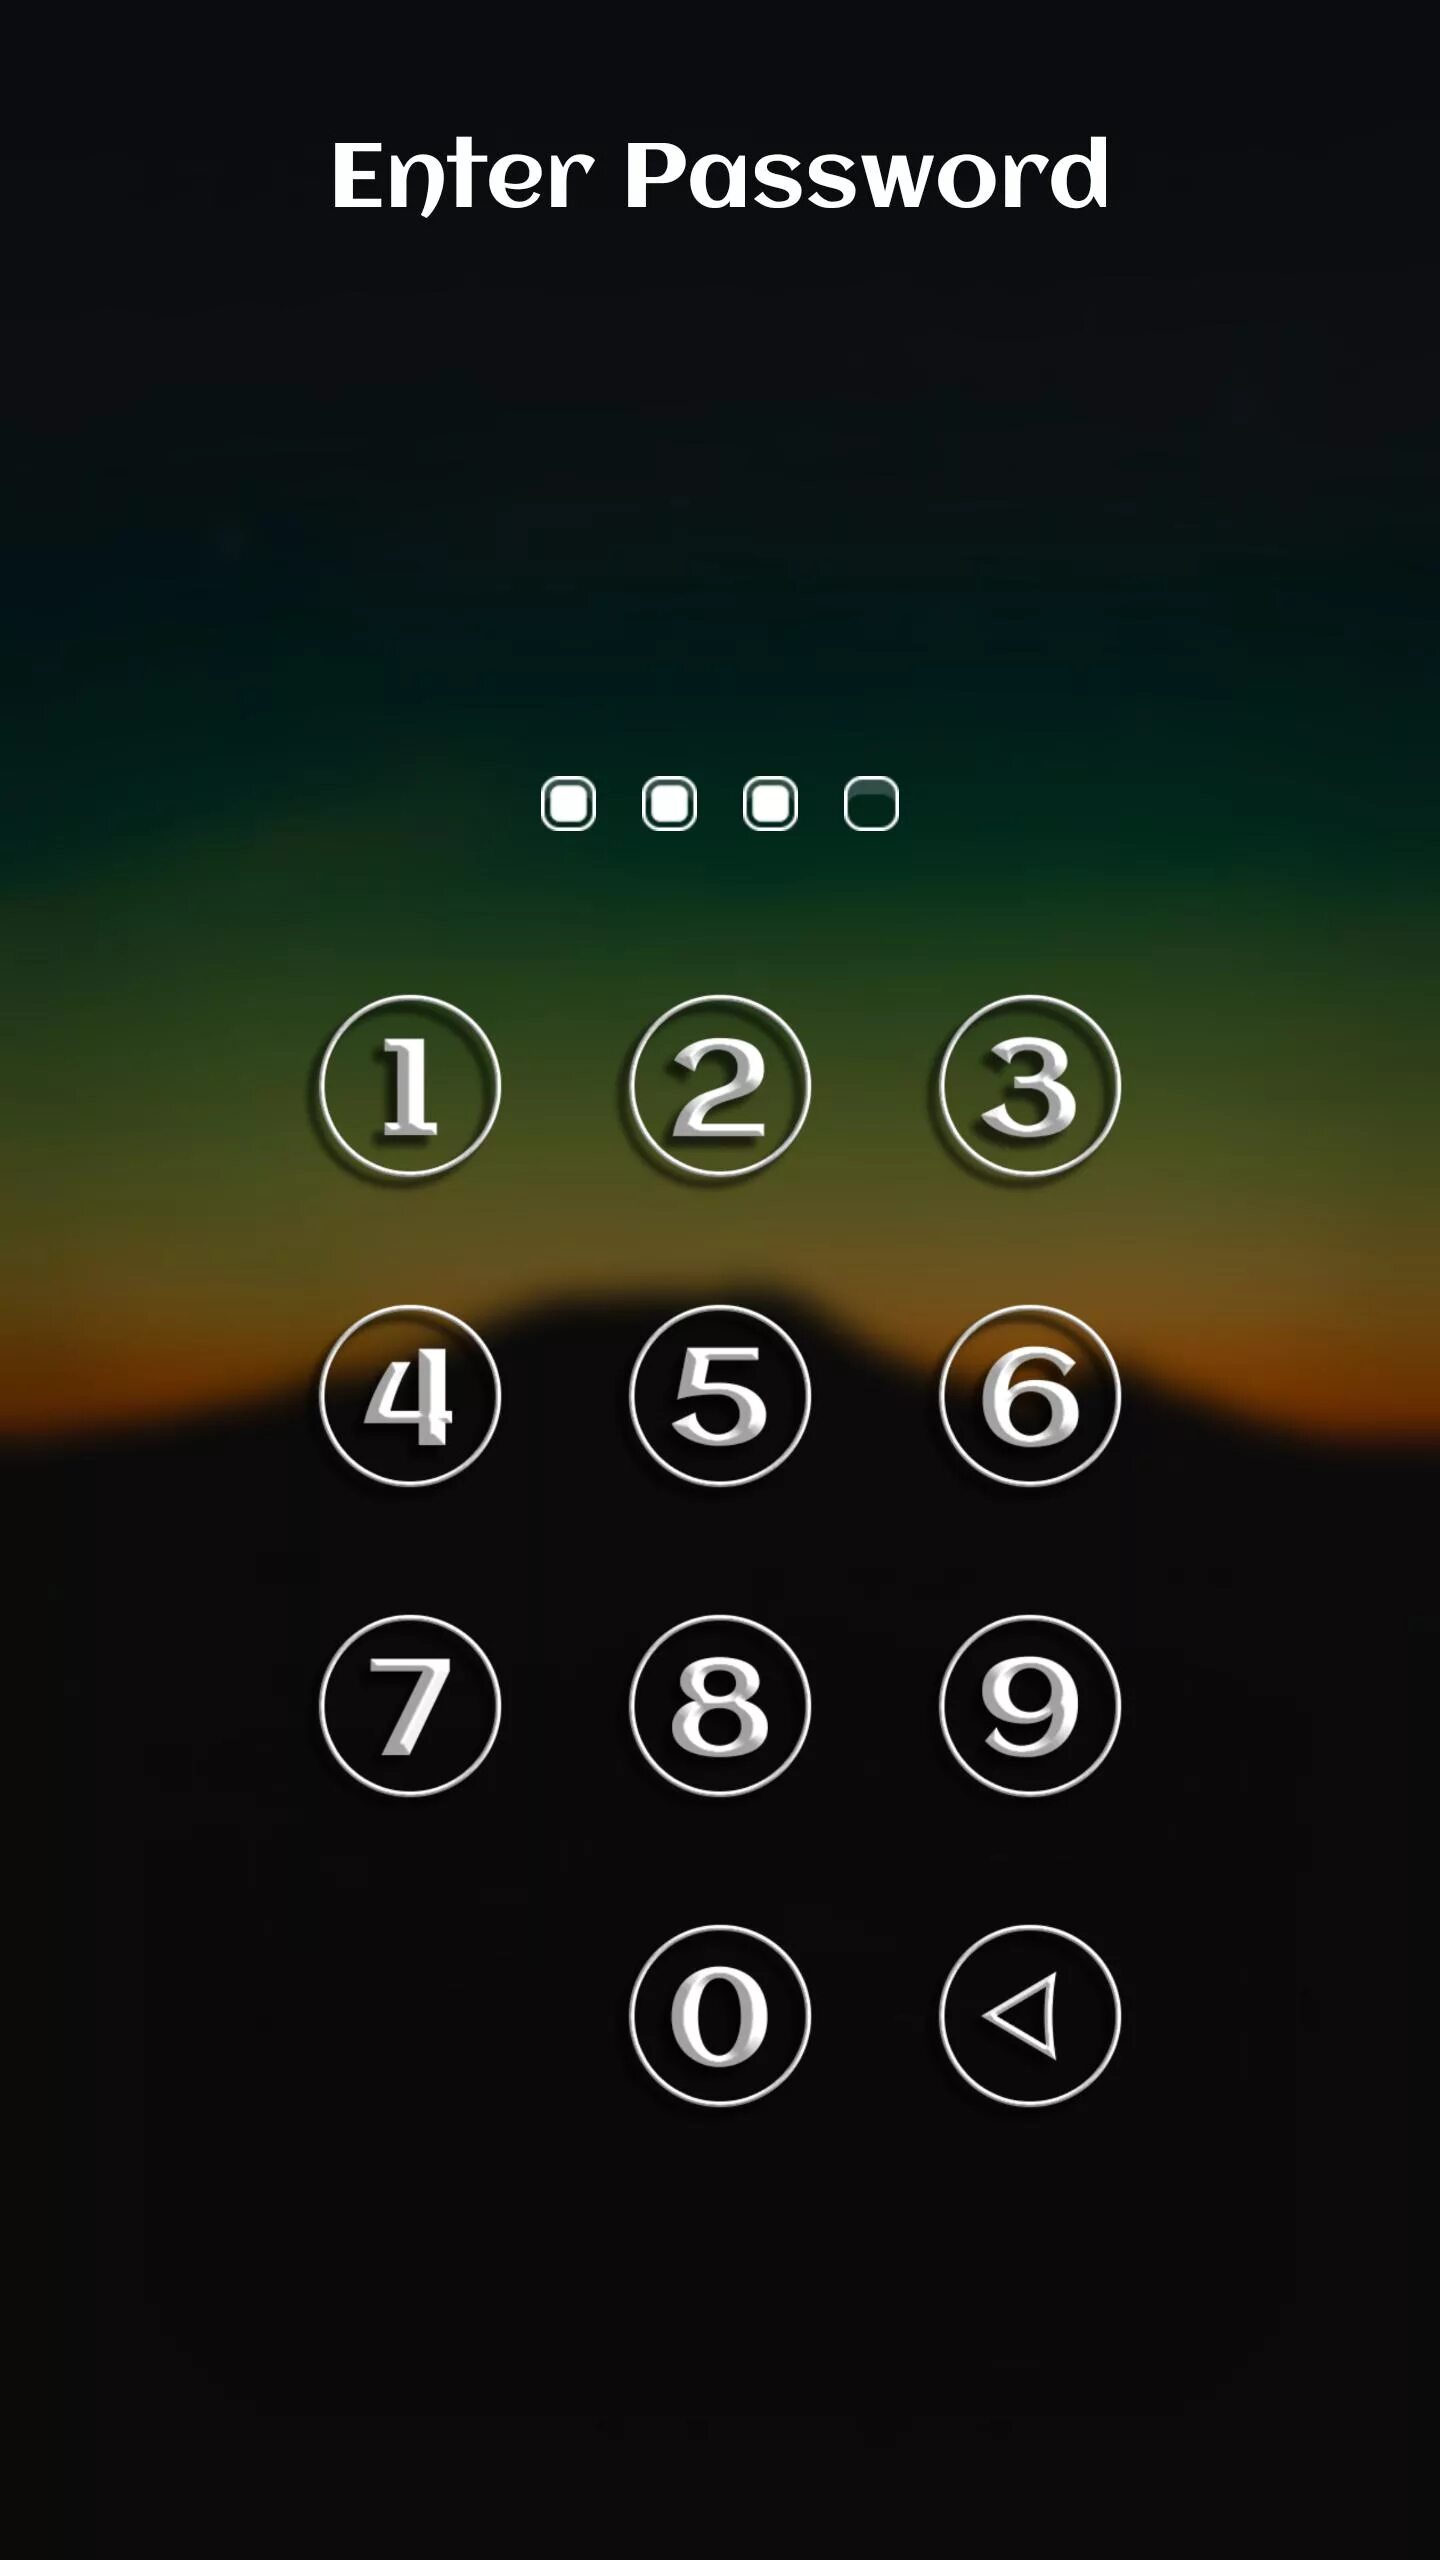 Экран блокировки. Экран блокировки телефона. Экран блокировки цифры. Значок блокировки телефона. Картинки блокировка для телефона